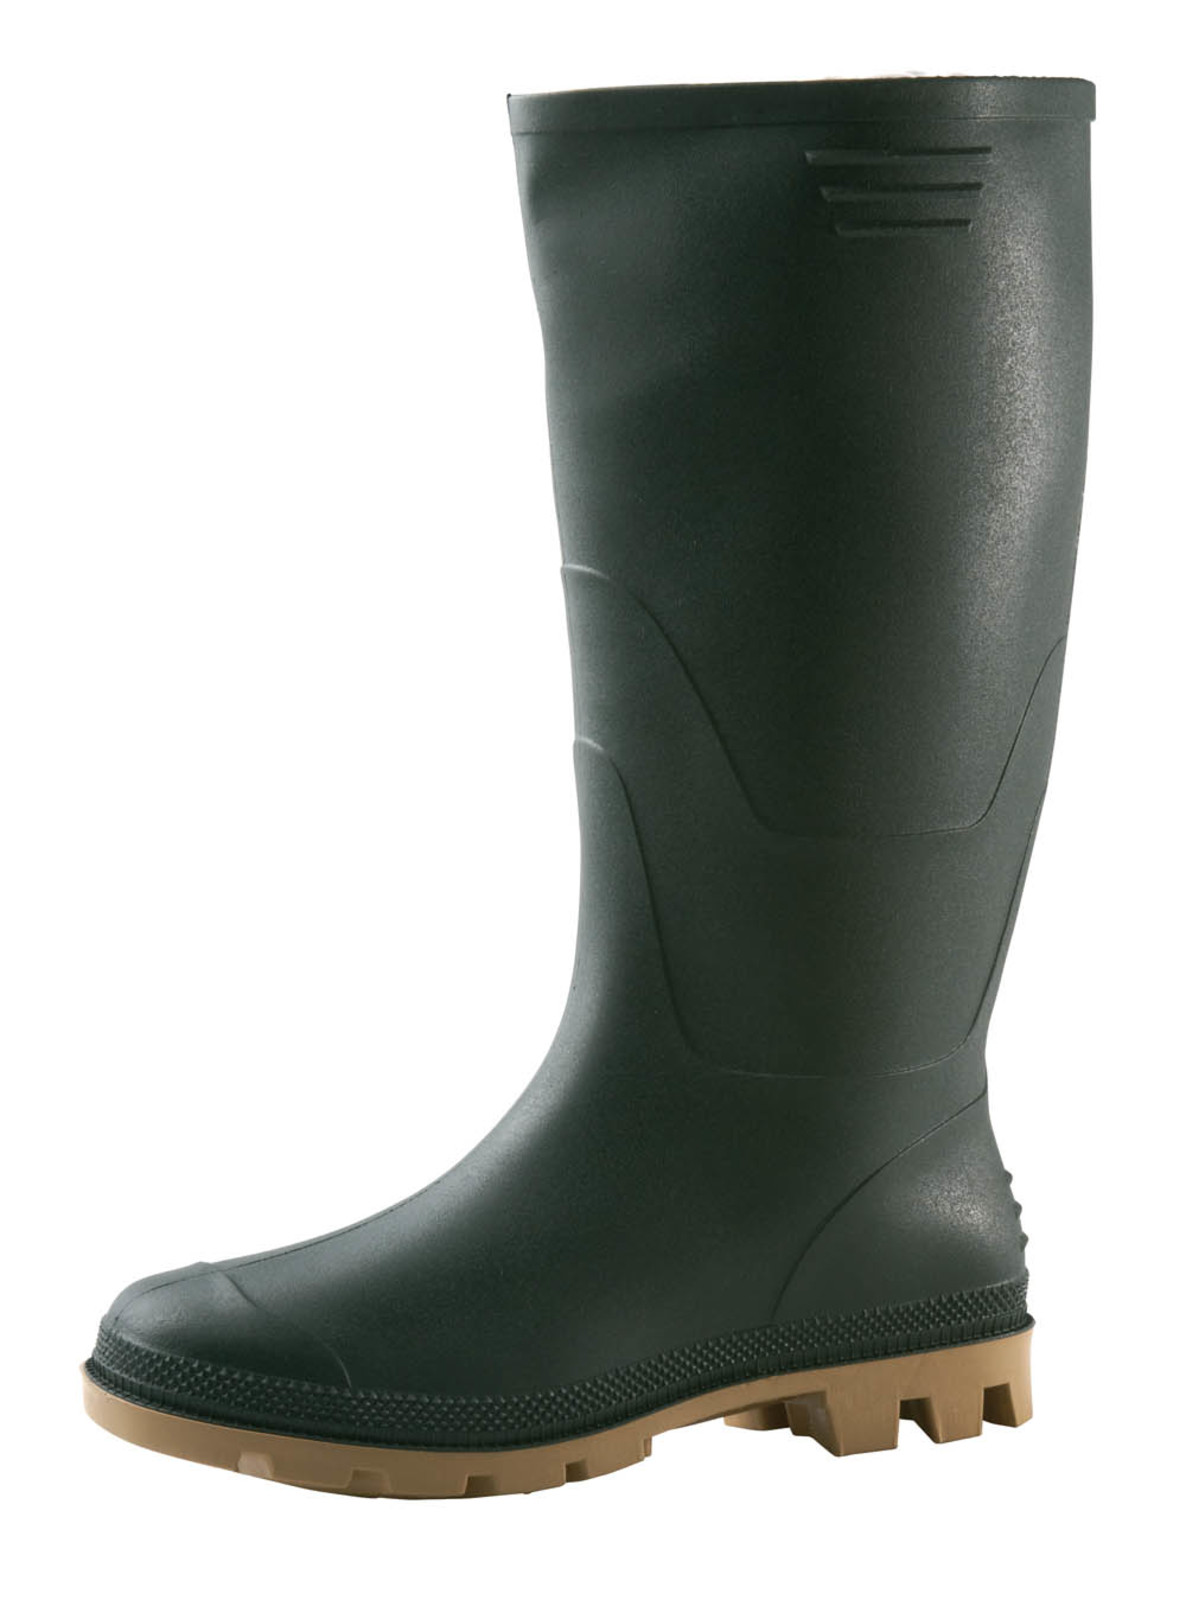 Gumáky Boots Ginocchio PVC - veľkosť: 41, farba: zelená